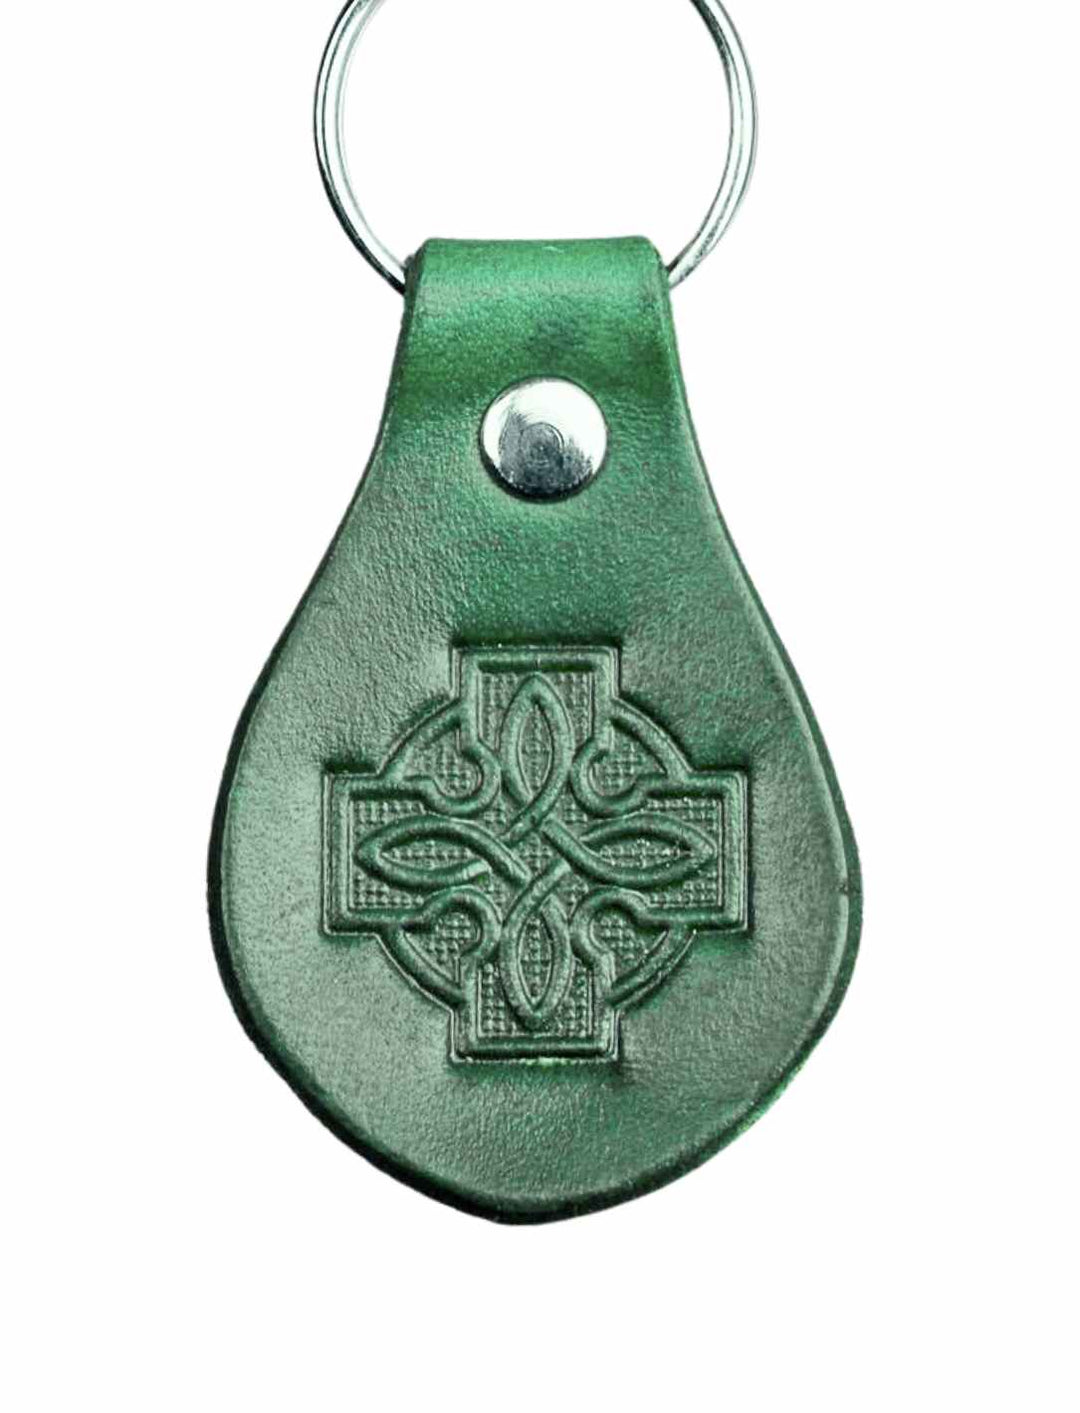 Echtleder 'Gaelic Cross' Schlüsselanhänger auf weißem Hintergrund – Irlands keltisches Erbe, verfügbar bei Runental.de.